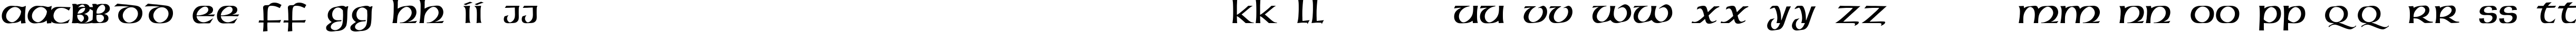 Пример написания английского алфавита шрифтом American-Uncial-Normal